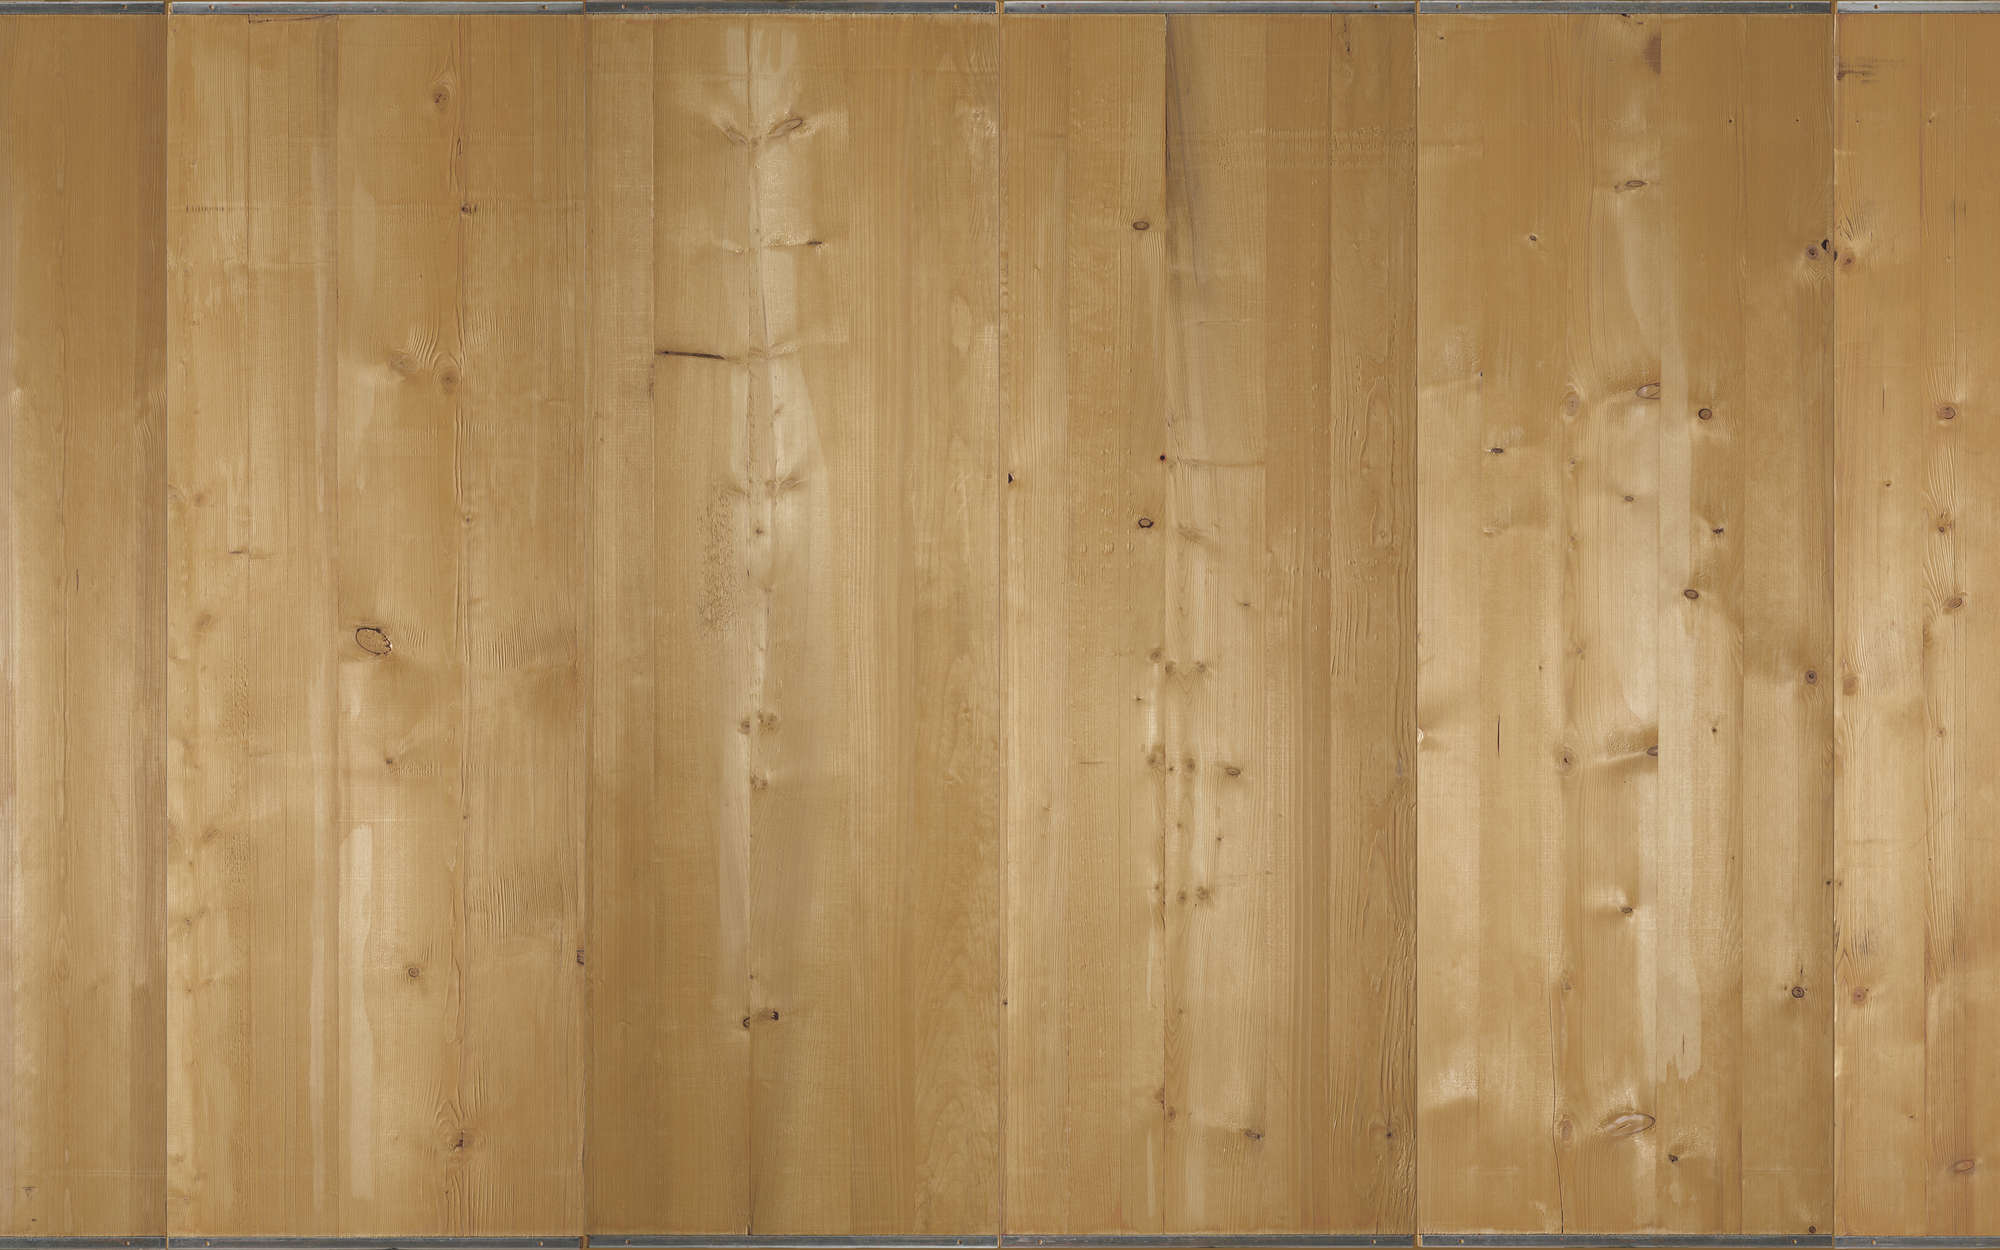             Fotomural tableros de madera clara - tejido no tejido liso de primera calidad
        